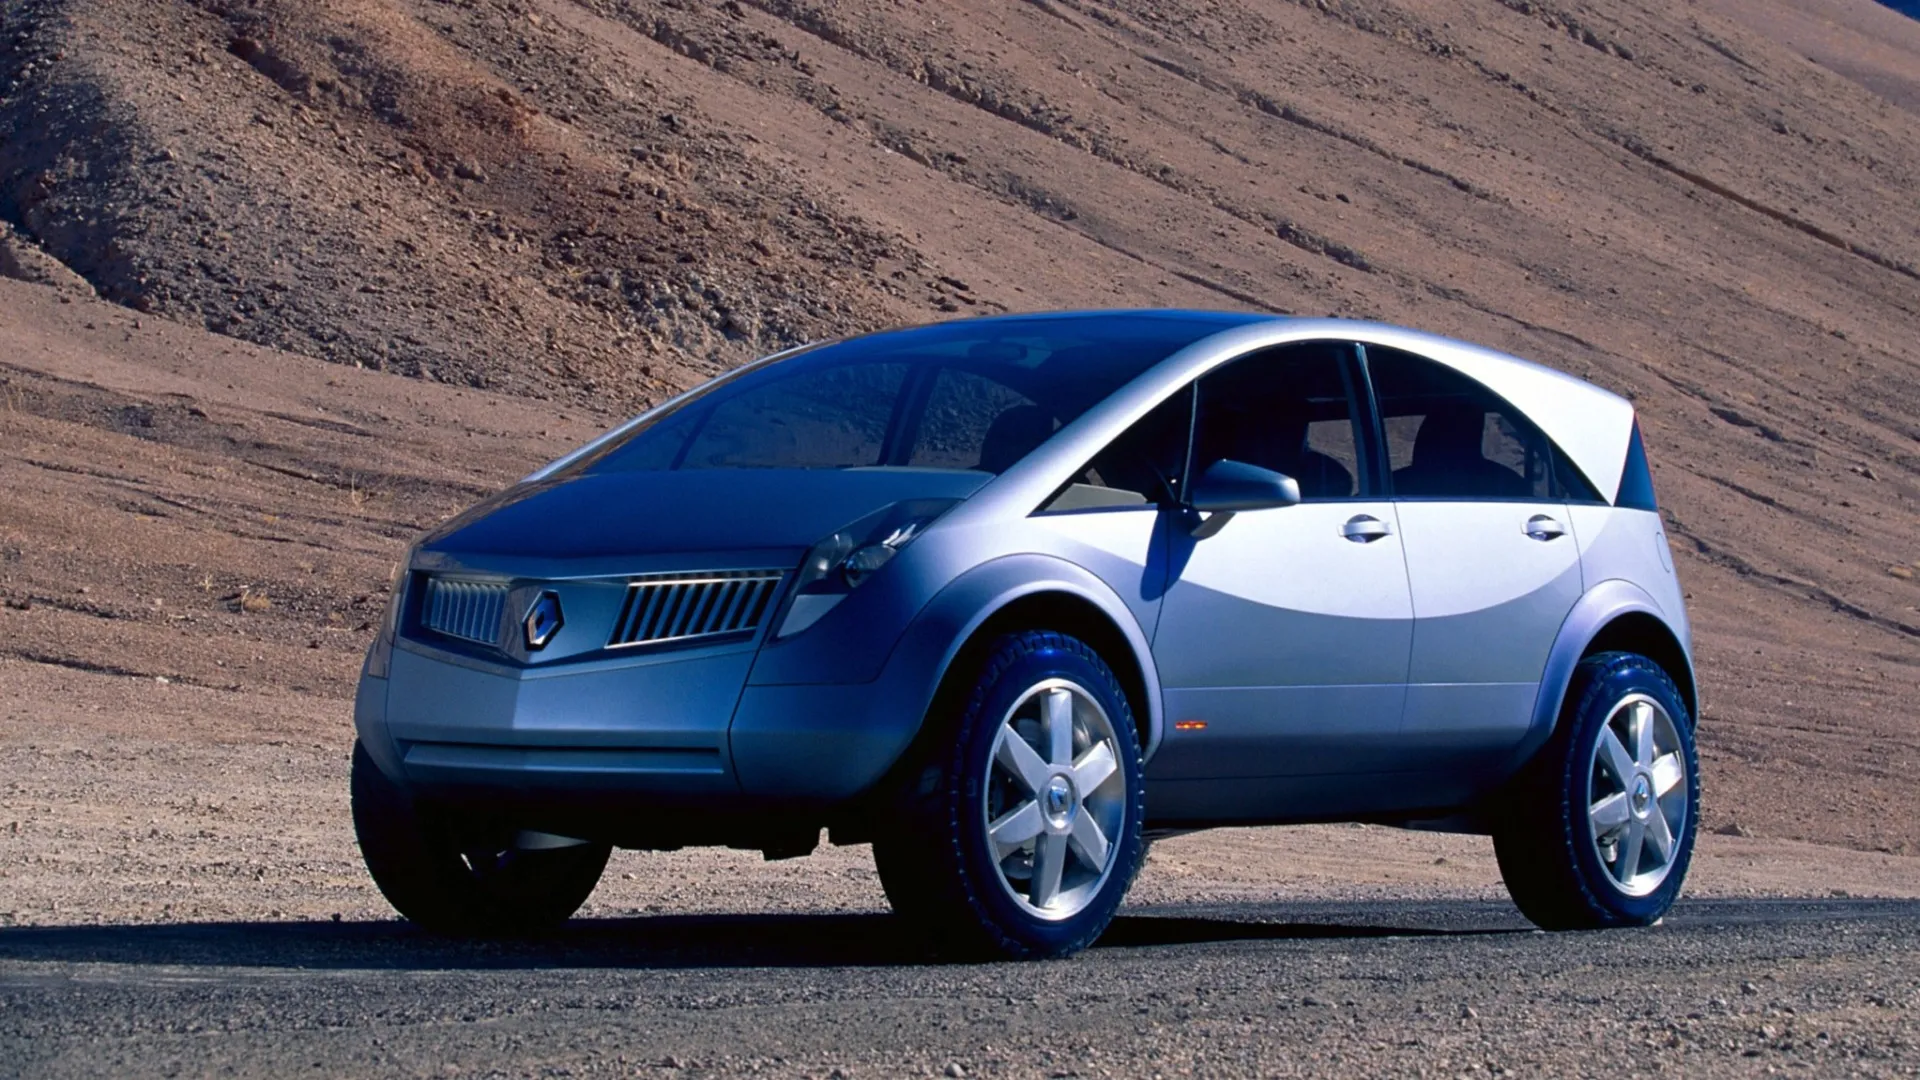 Coche del día: Renault Koleos Concept